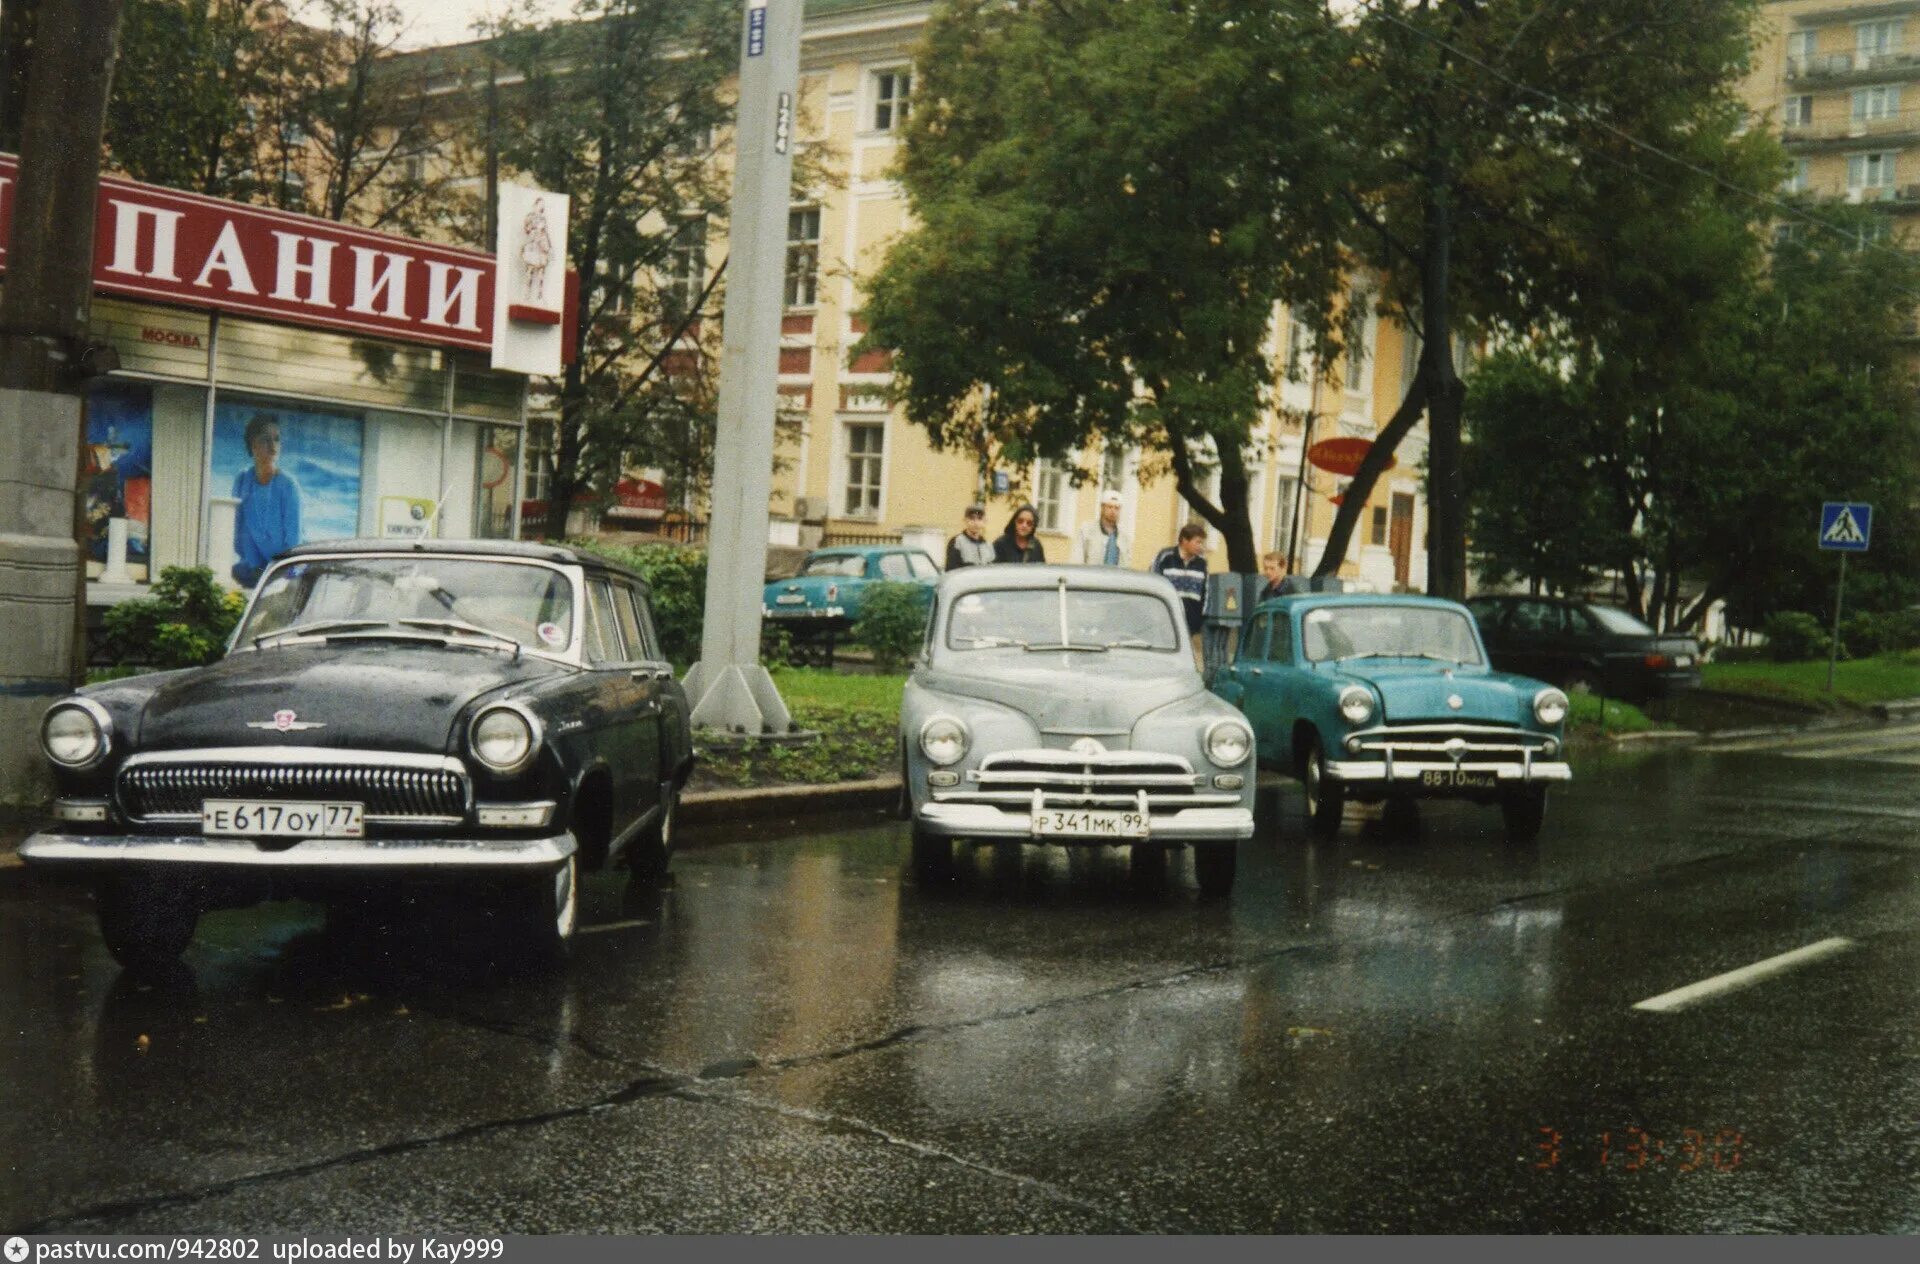 Начало 2000 х годов в россии. Машины в 90-е годы. 90е машины. Автомобили на улицах Москвы в 90-х годах. Иномарки в 90-х в России.